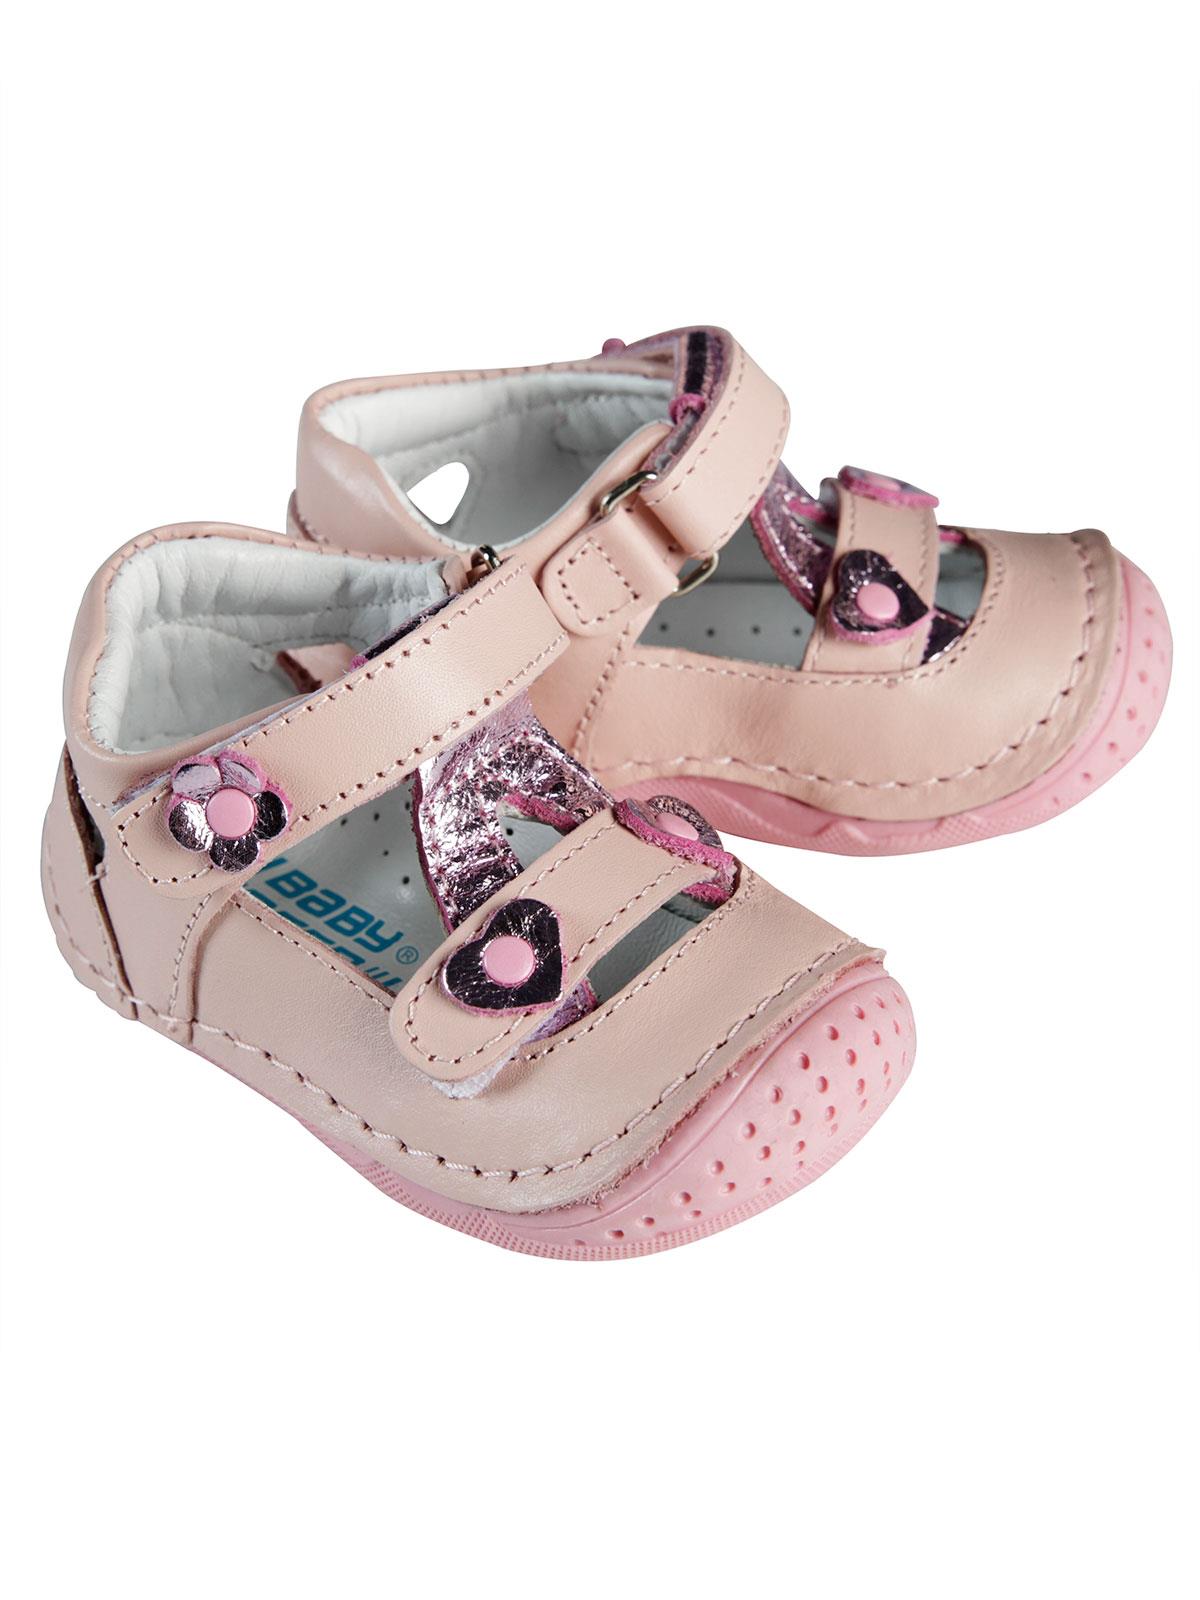 Baby Force Kız Bebek Deri İlkadım Ayakkabısı 18-21 Numara Pudra Pembe